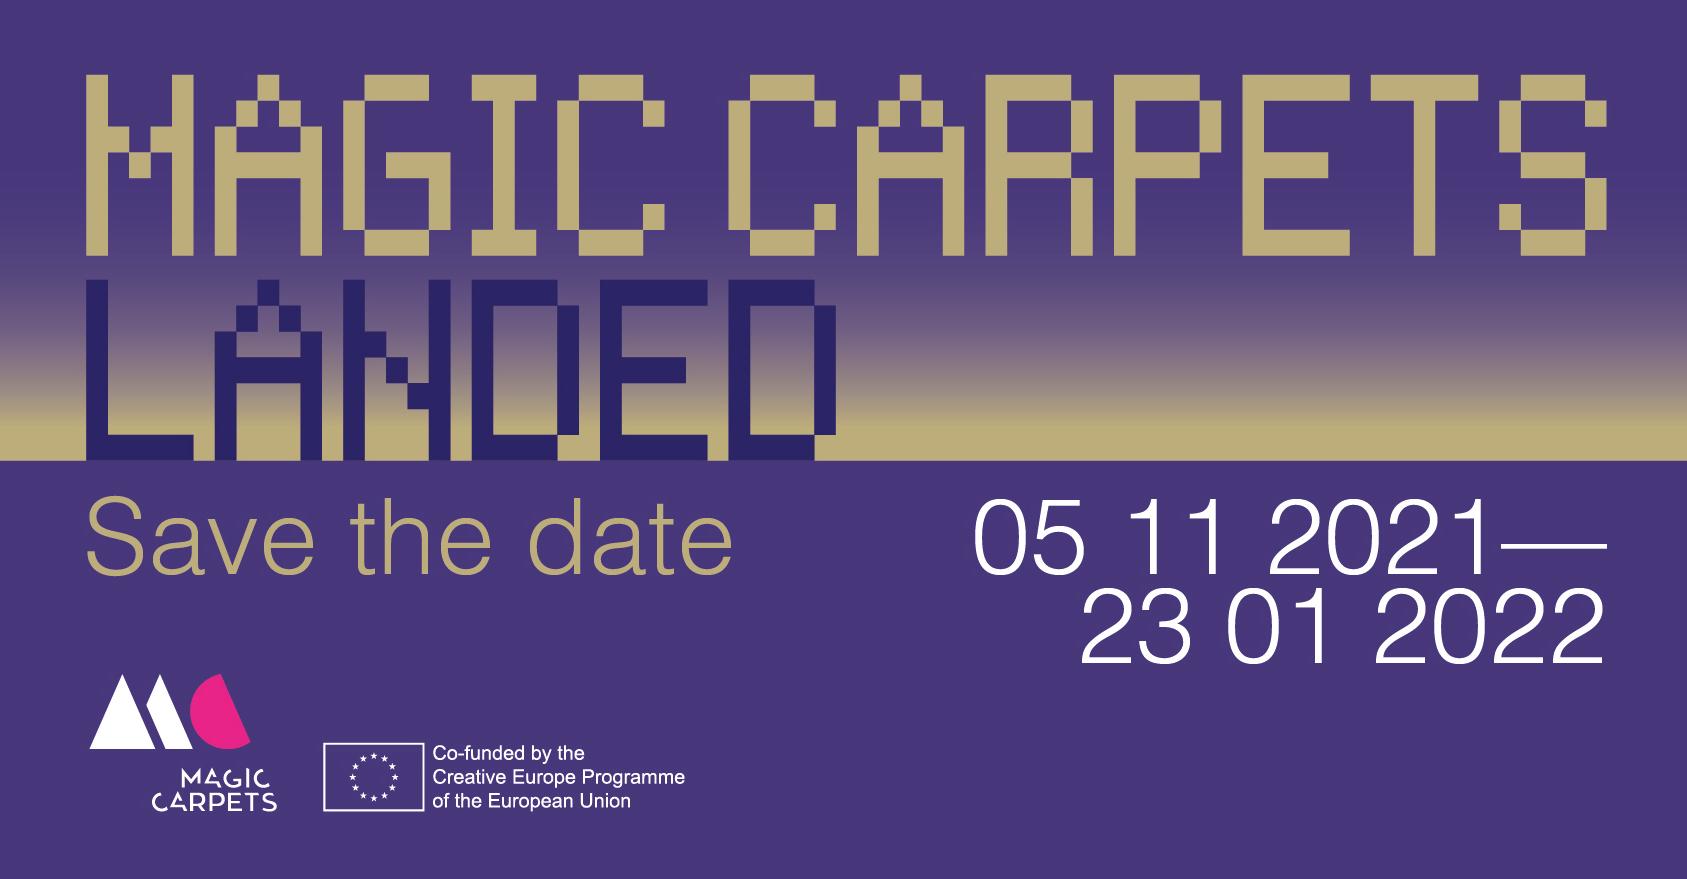 Tarptautinė šiuolaikinio meno paroda MagiC Carpets Landed